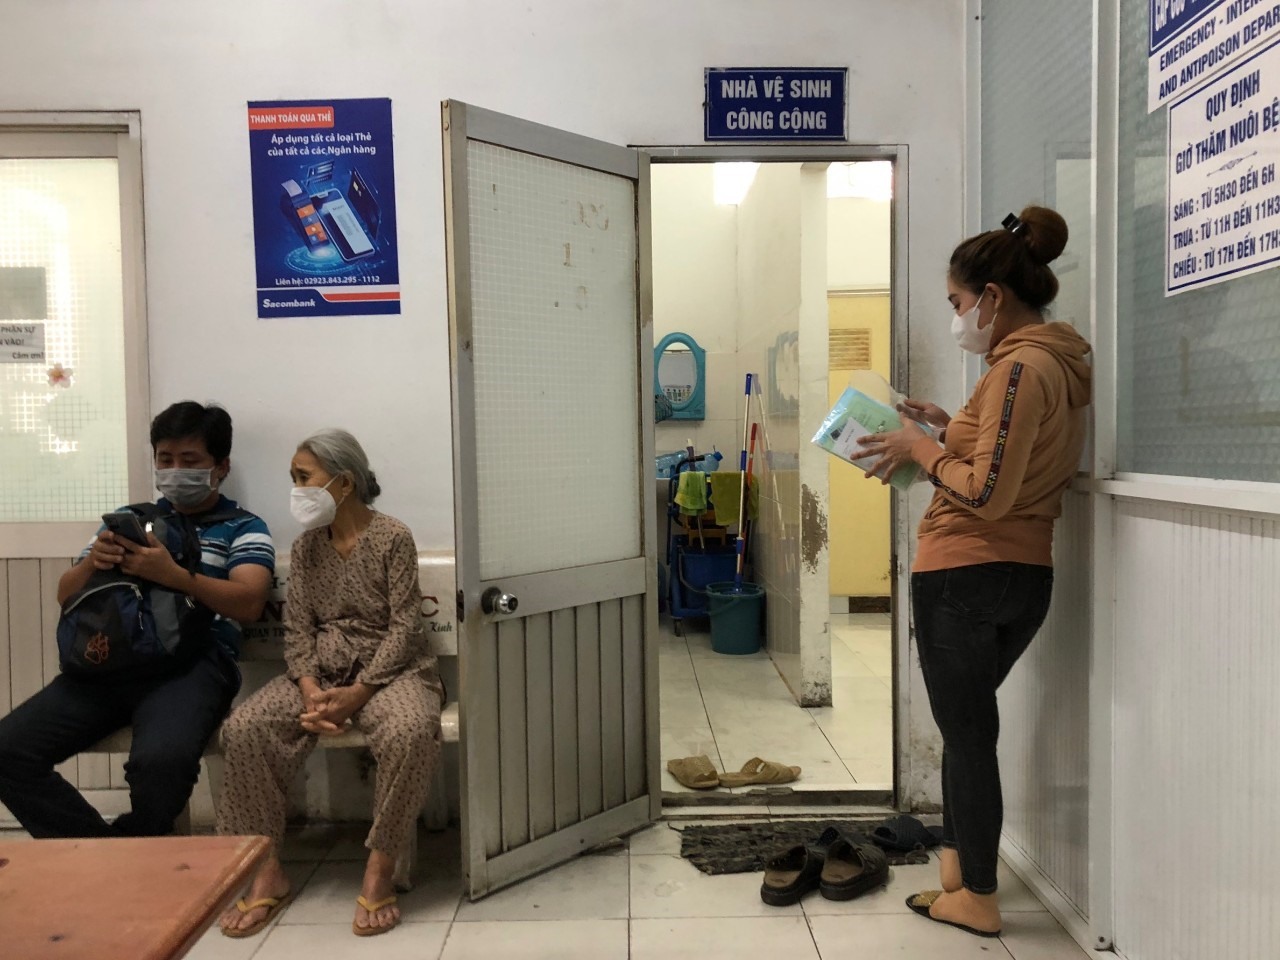 Ông Nguyễn Văn Trường (Thị xã Bình Minh, tỉnh Vĩnh Long) cho biết,  WC ở đây khá nhỏ, bệnh nhân và người đến thăm khám phải chờ đợi rất lâu. Tuy nhiên, nơi đây khá sạch sẽ vì phải để dép ở ngoài.